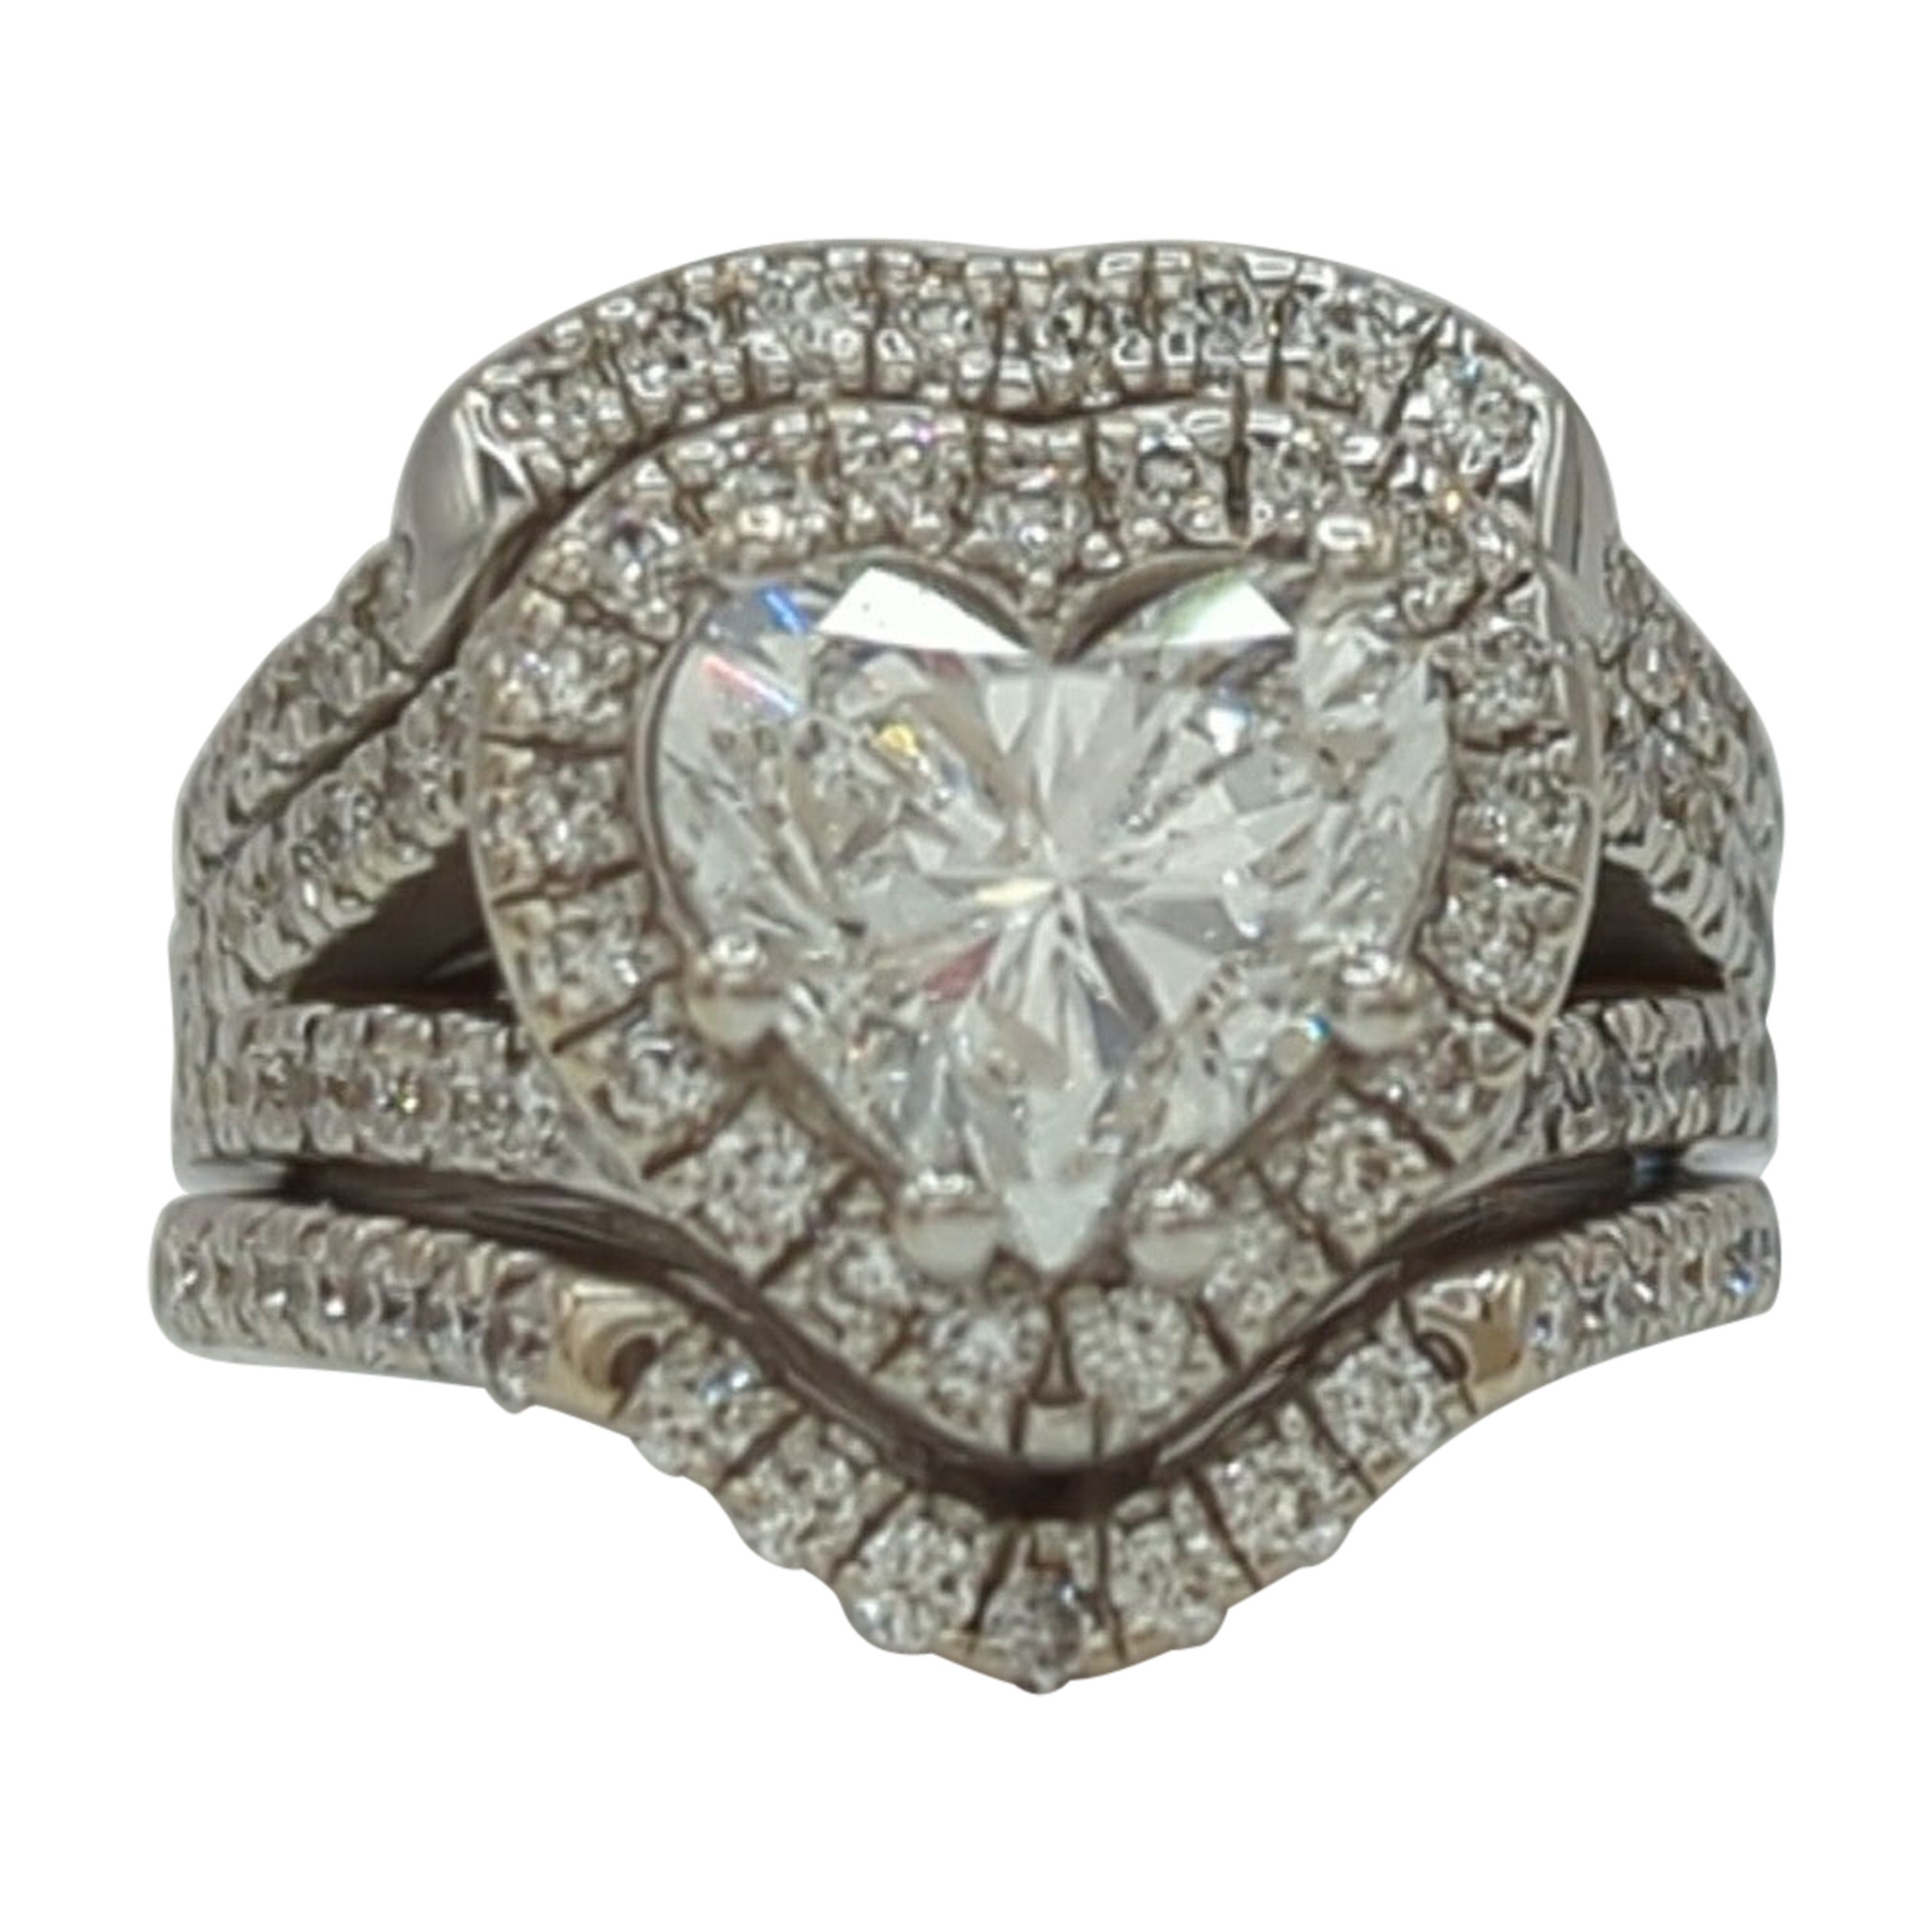 GIA White Diamond Heart Ring in 14K White Gold